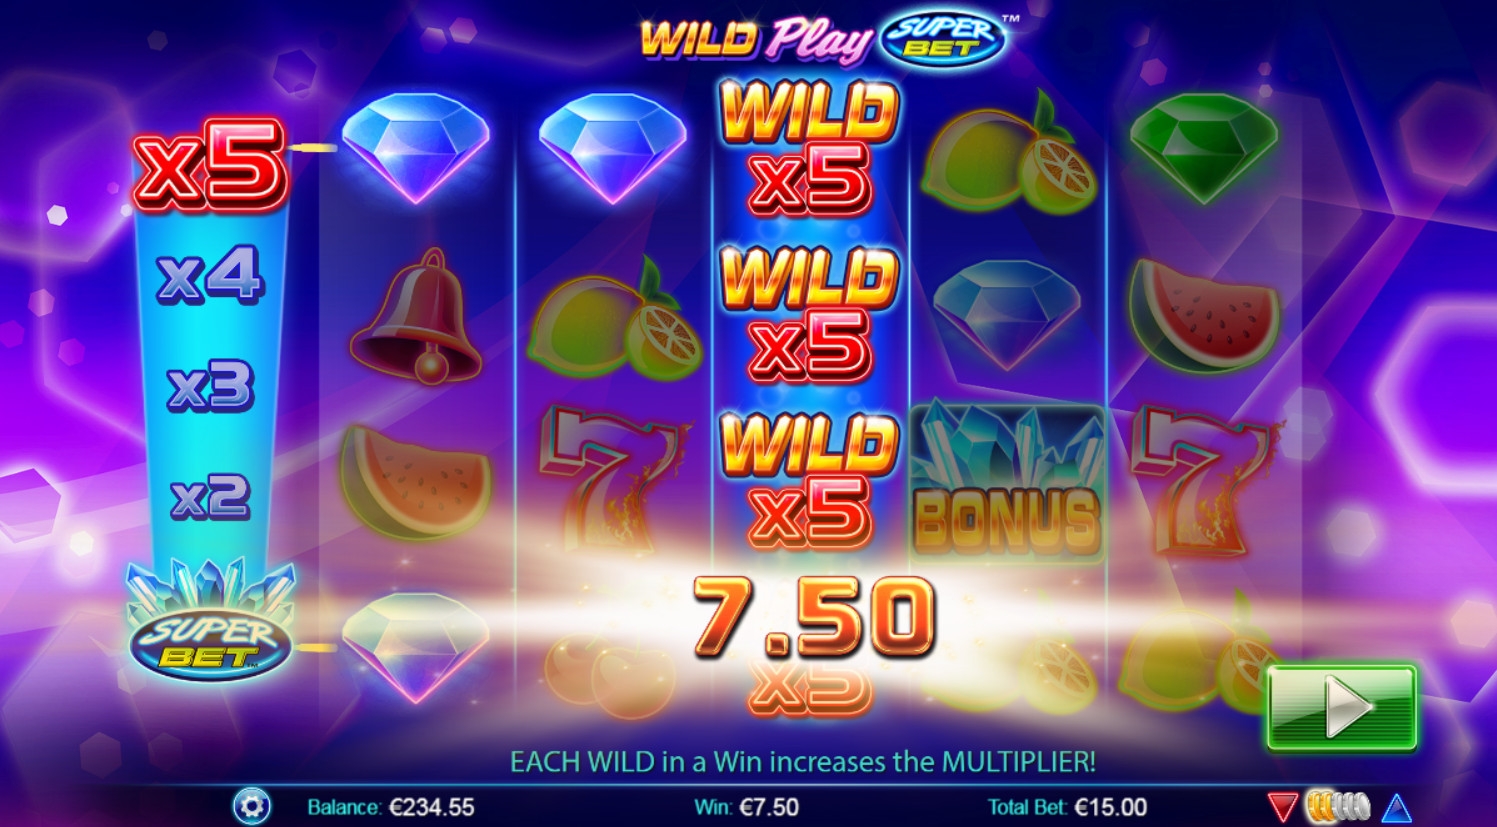 Wild Play: Super Bet (Безумная игра: Суперставка) из раздела Игровые автоматы